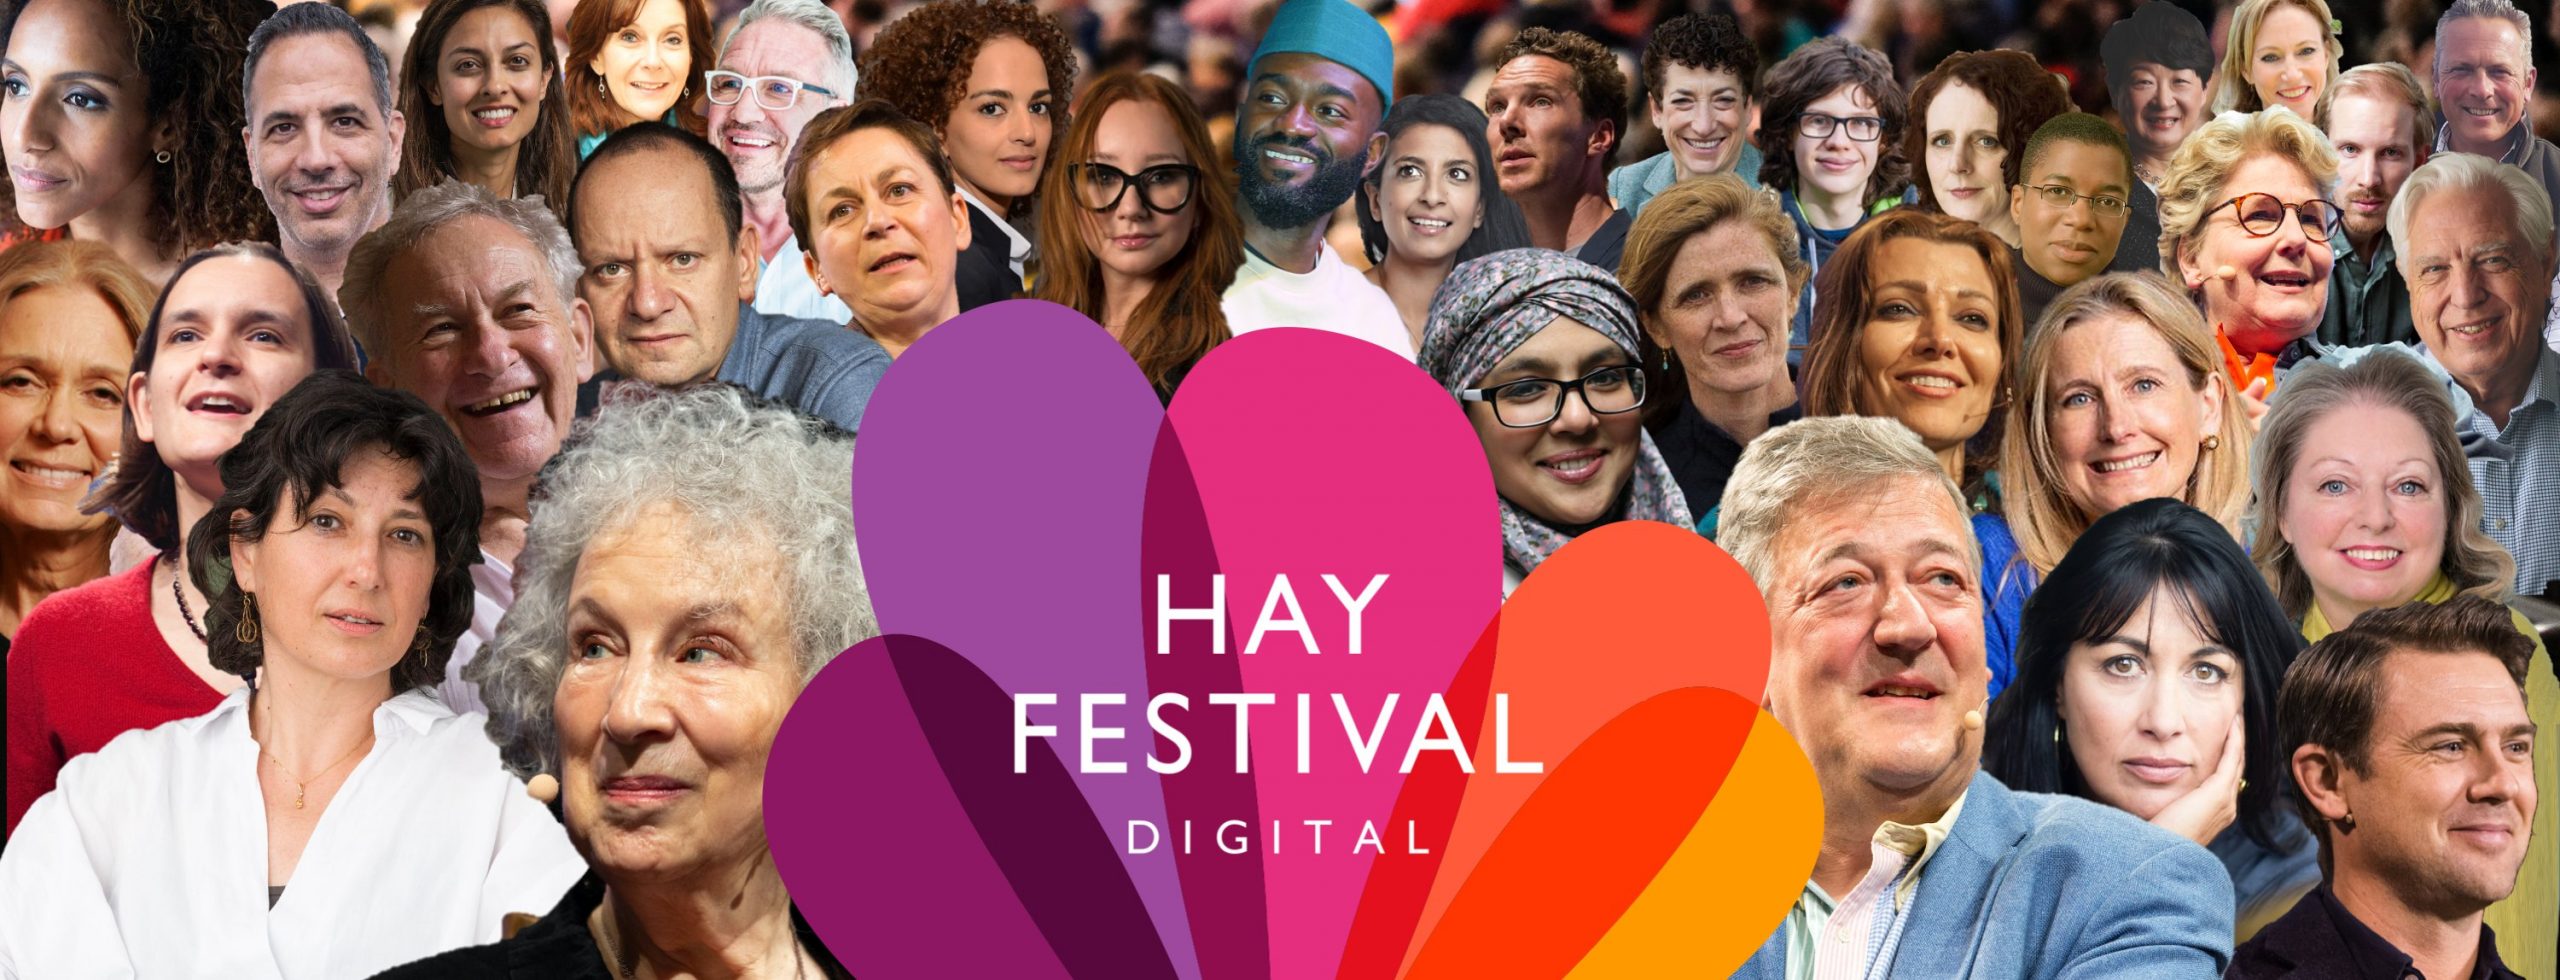 Hay Festival traz grande elenco em sua primeira edição digital.